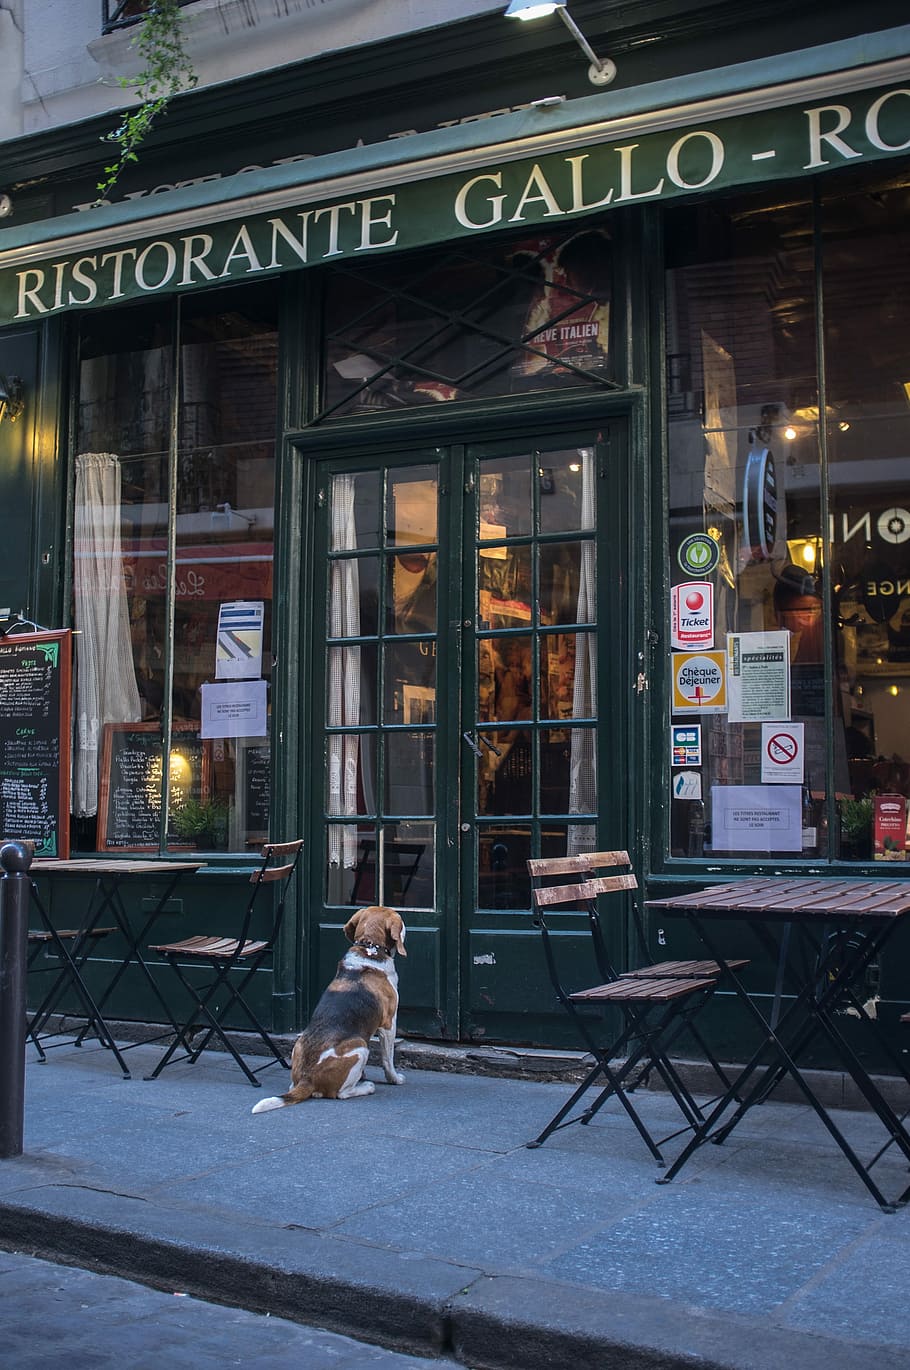 establecimiento ristorante gallo, restaurante francés, cervecería, París, espera, perro, paciencia, francia, ciudad, un animal